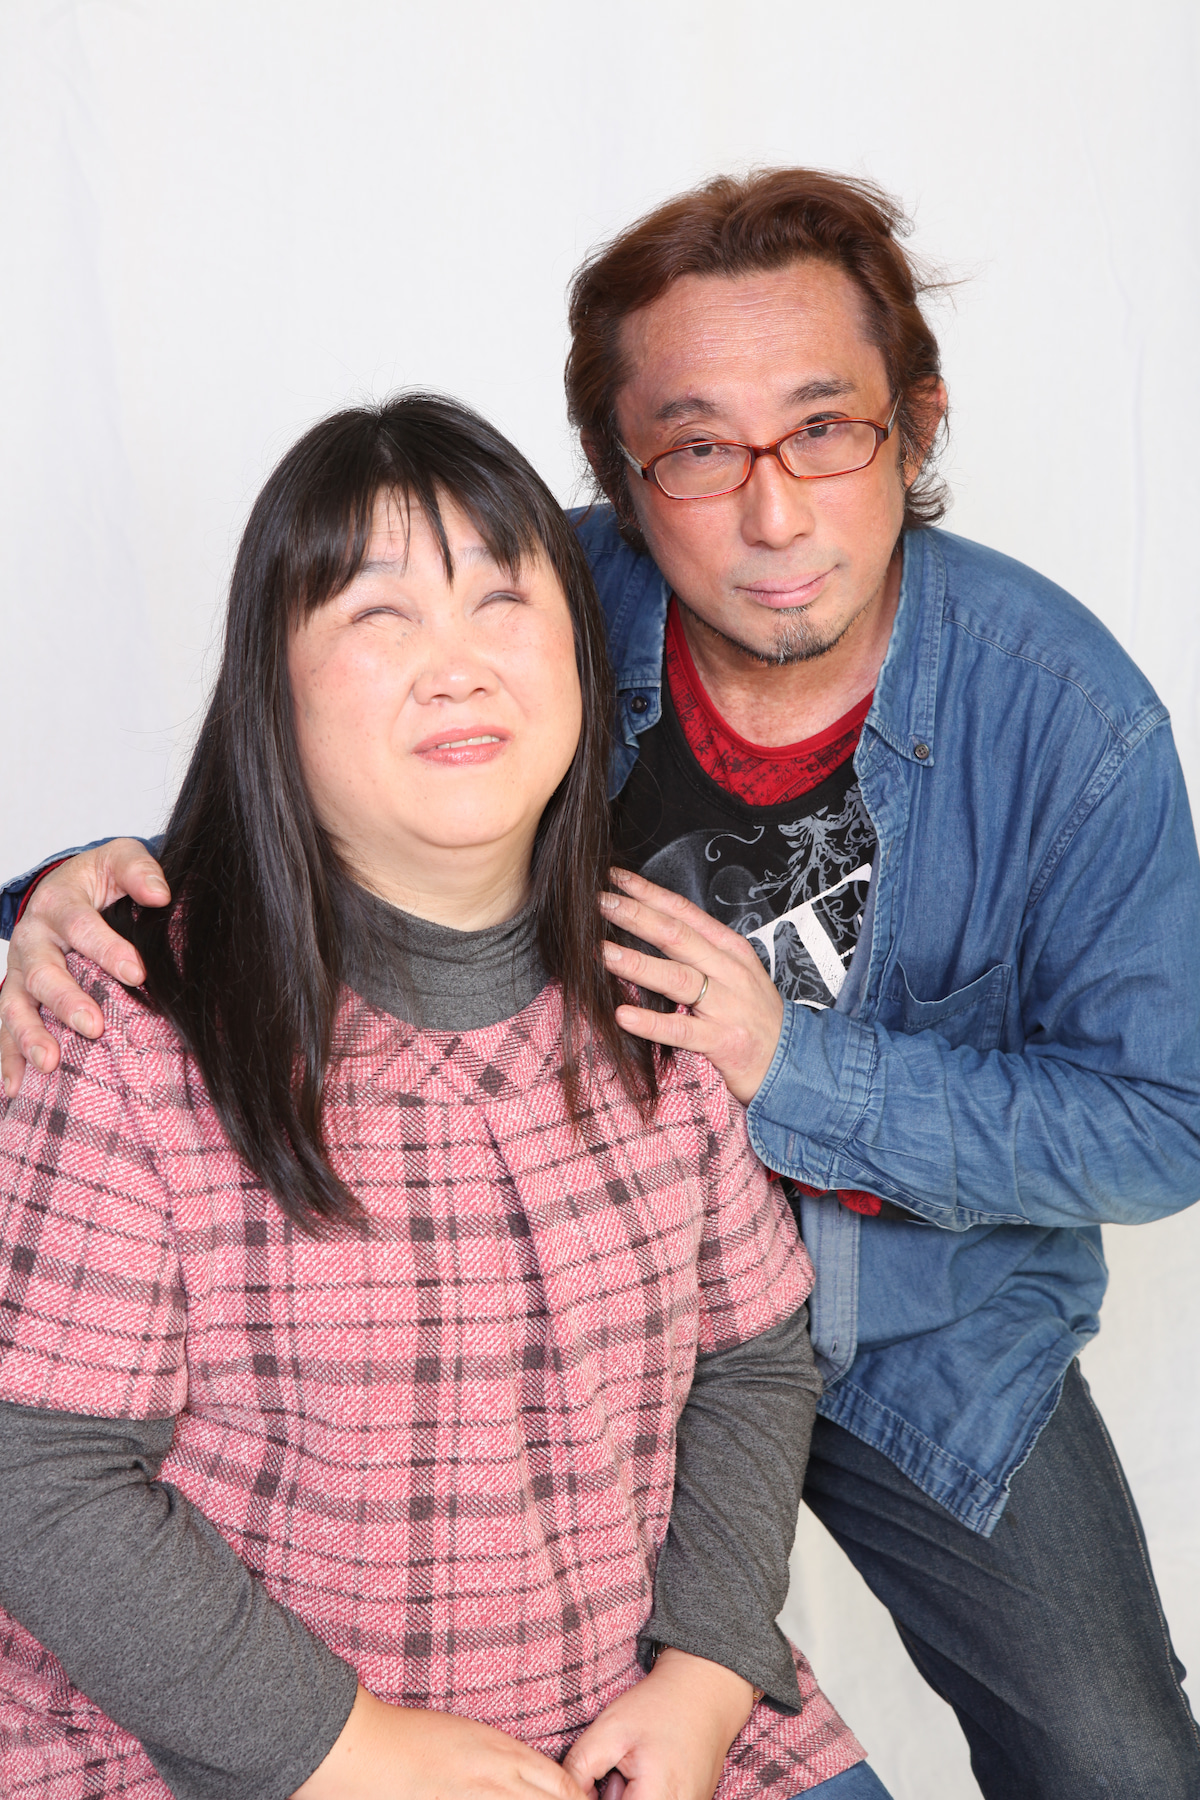 美月さんと鈴木さんのツーショット写真です。鈴木さんが、美月さんの肩に手を添えて、カメラを見据えて微笑んでいます